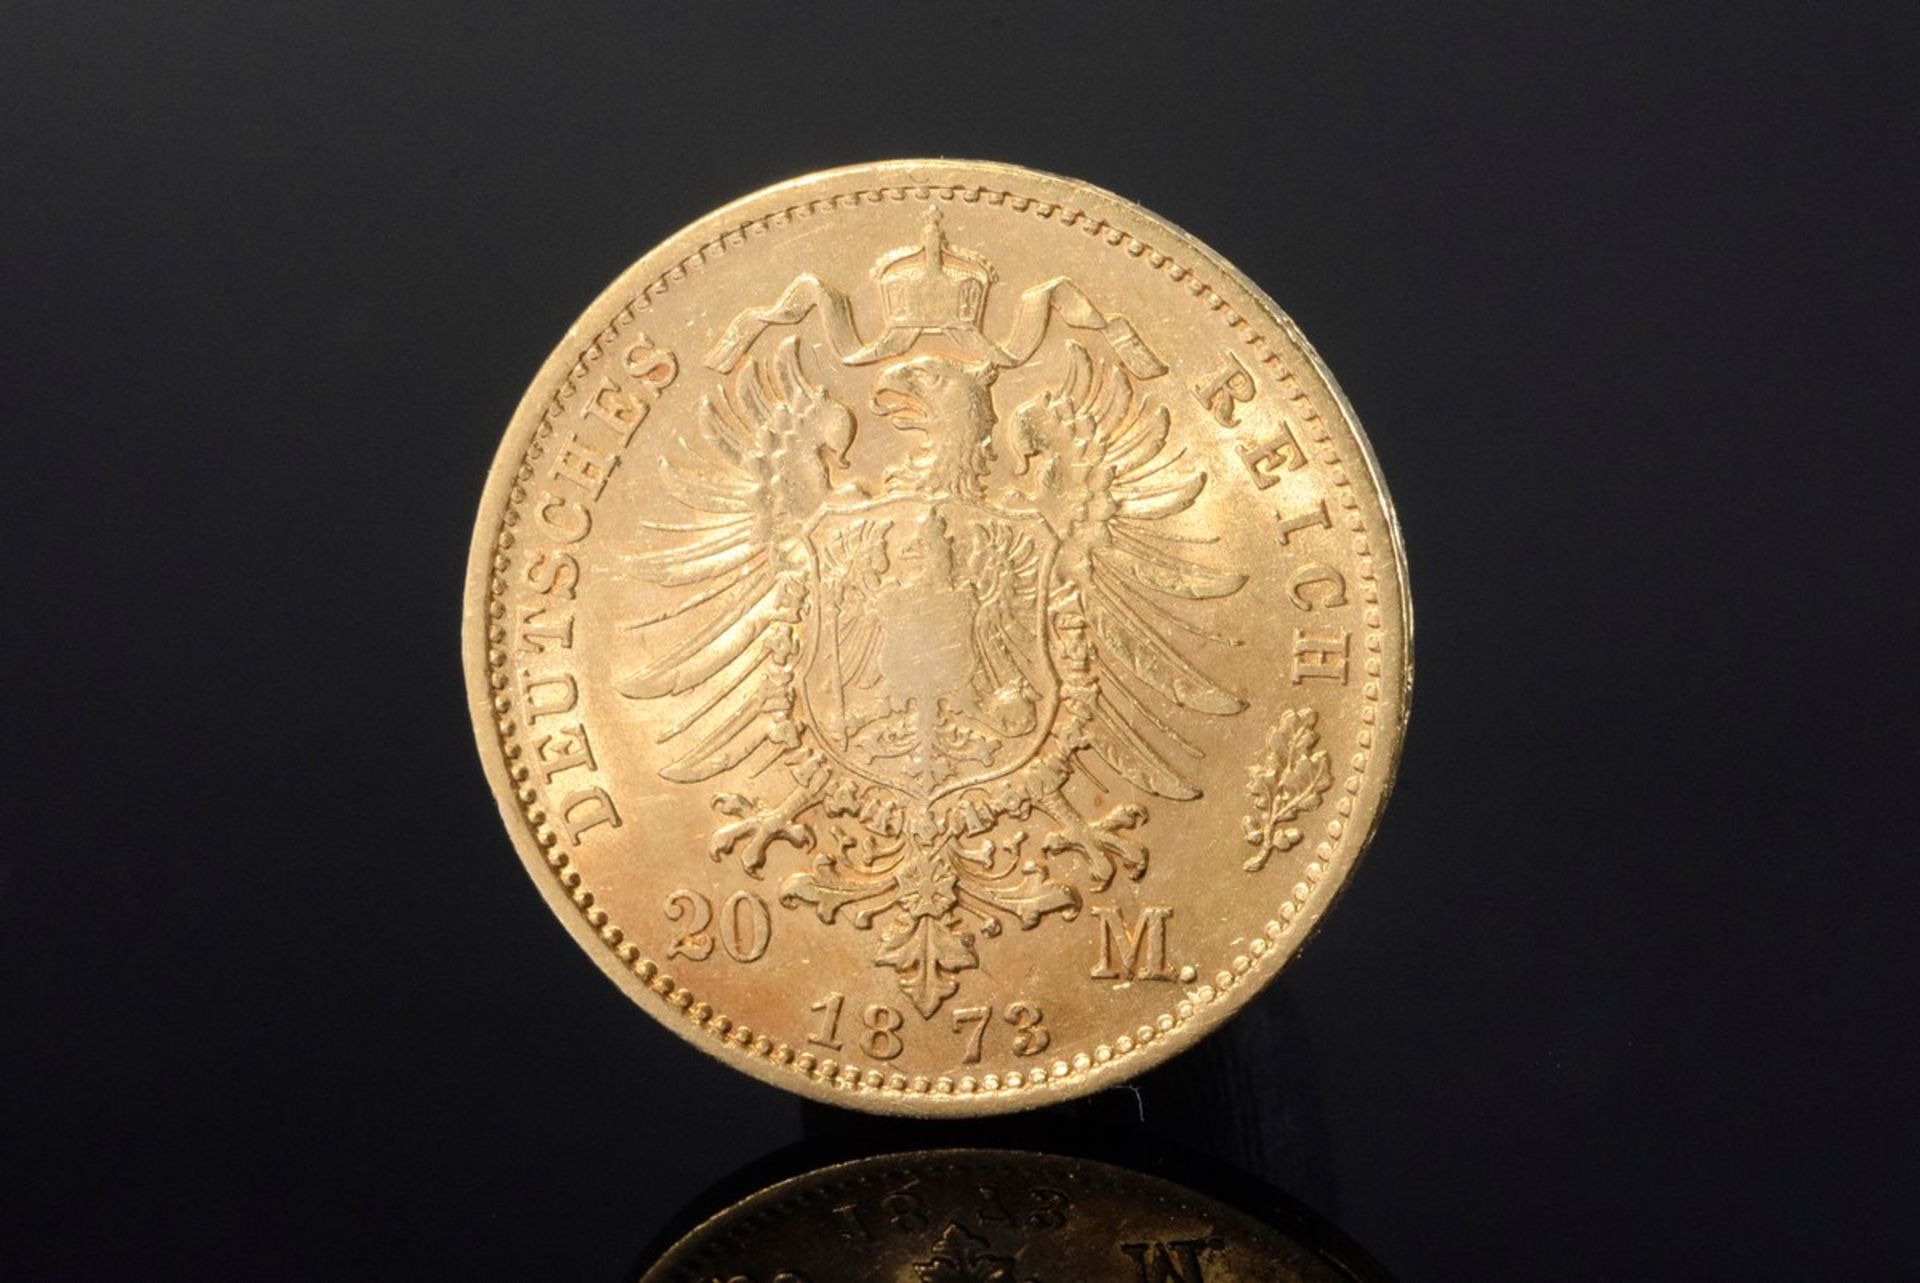 GG 900 Münze, 20 Mark 1873 A, Wilhelm I. Deutscher Kaiser - König von Preussen, 7,9g, Ø 2,2cm GG 900 - Bild 2 aus 2